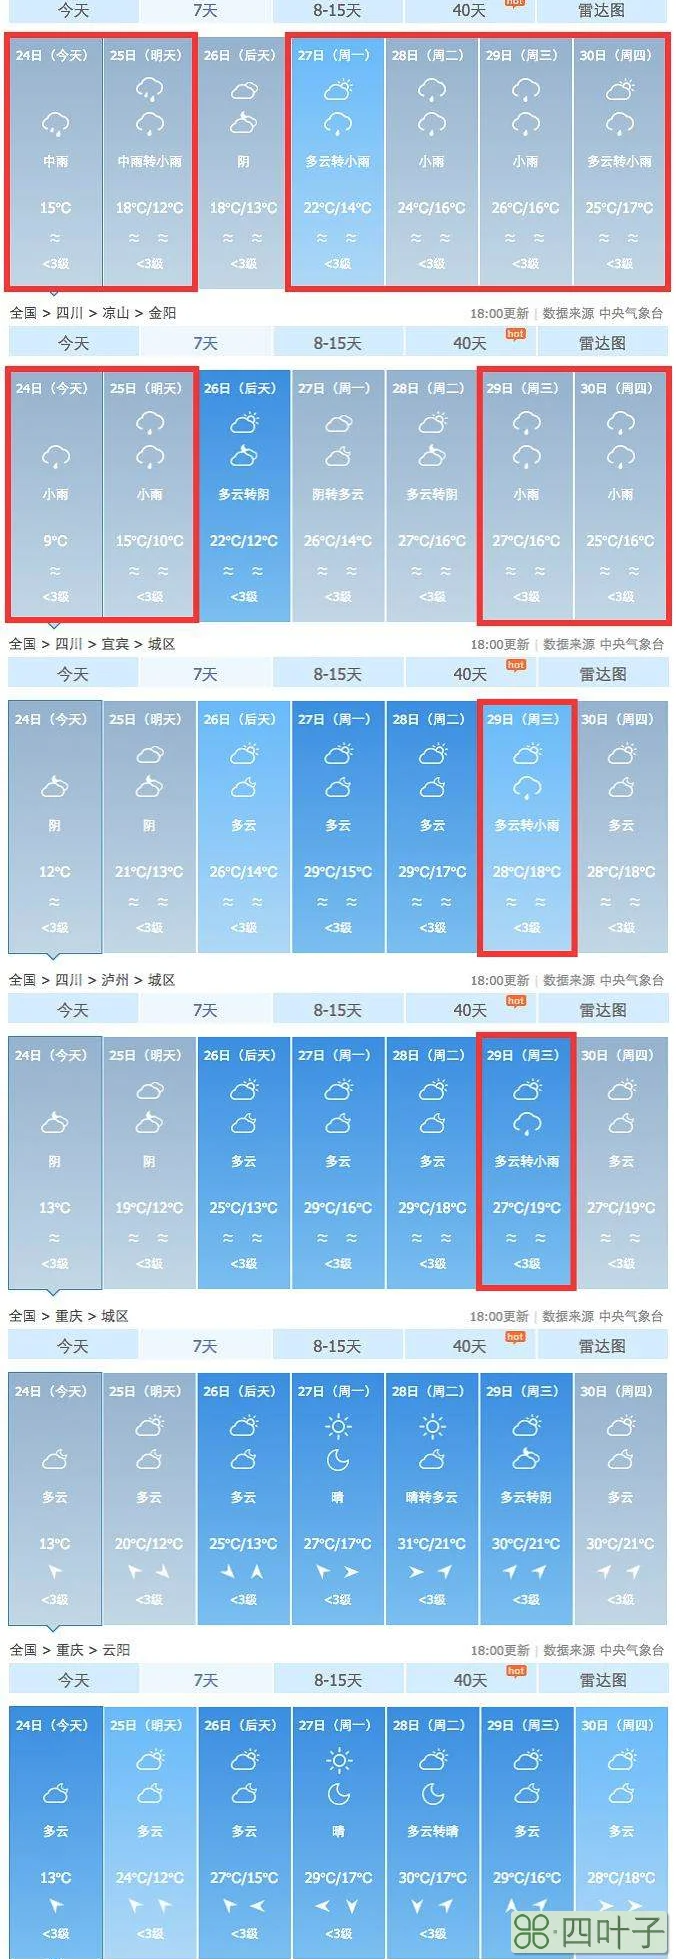 上海天气40天预报正确上海天气40天预报正确的是